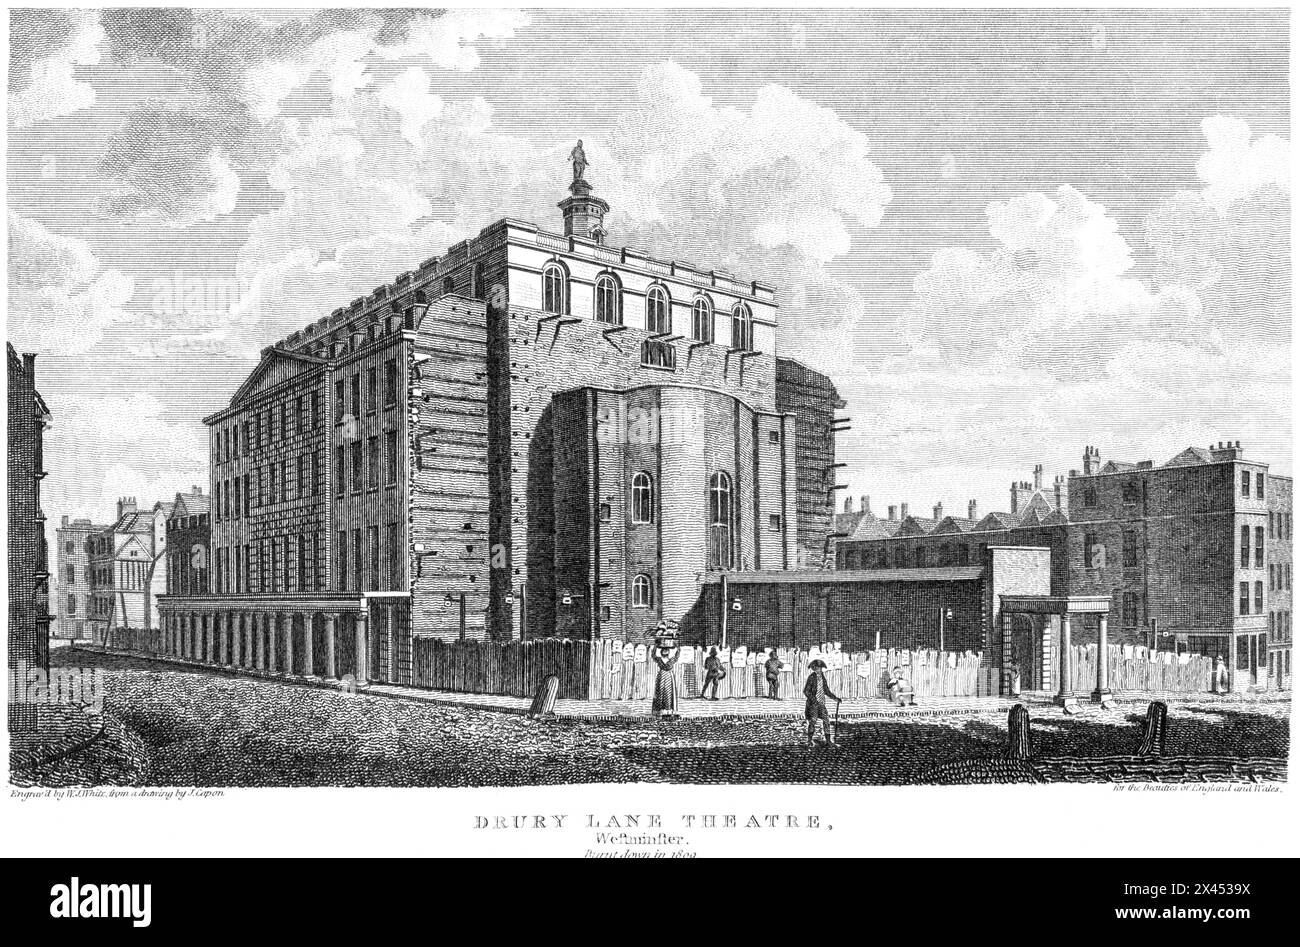 Ein Stich mit dem Titel Drury Lane Theatre, Westminster. 1809 brannte London UK mit hoher Auflösung aus einem um 1815 erschienenen Buch. Stockfoto